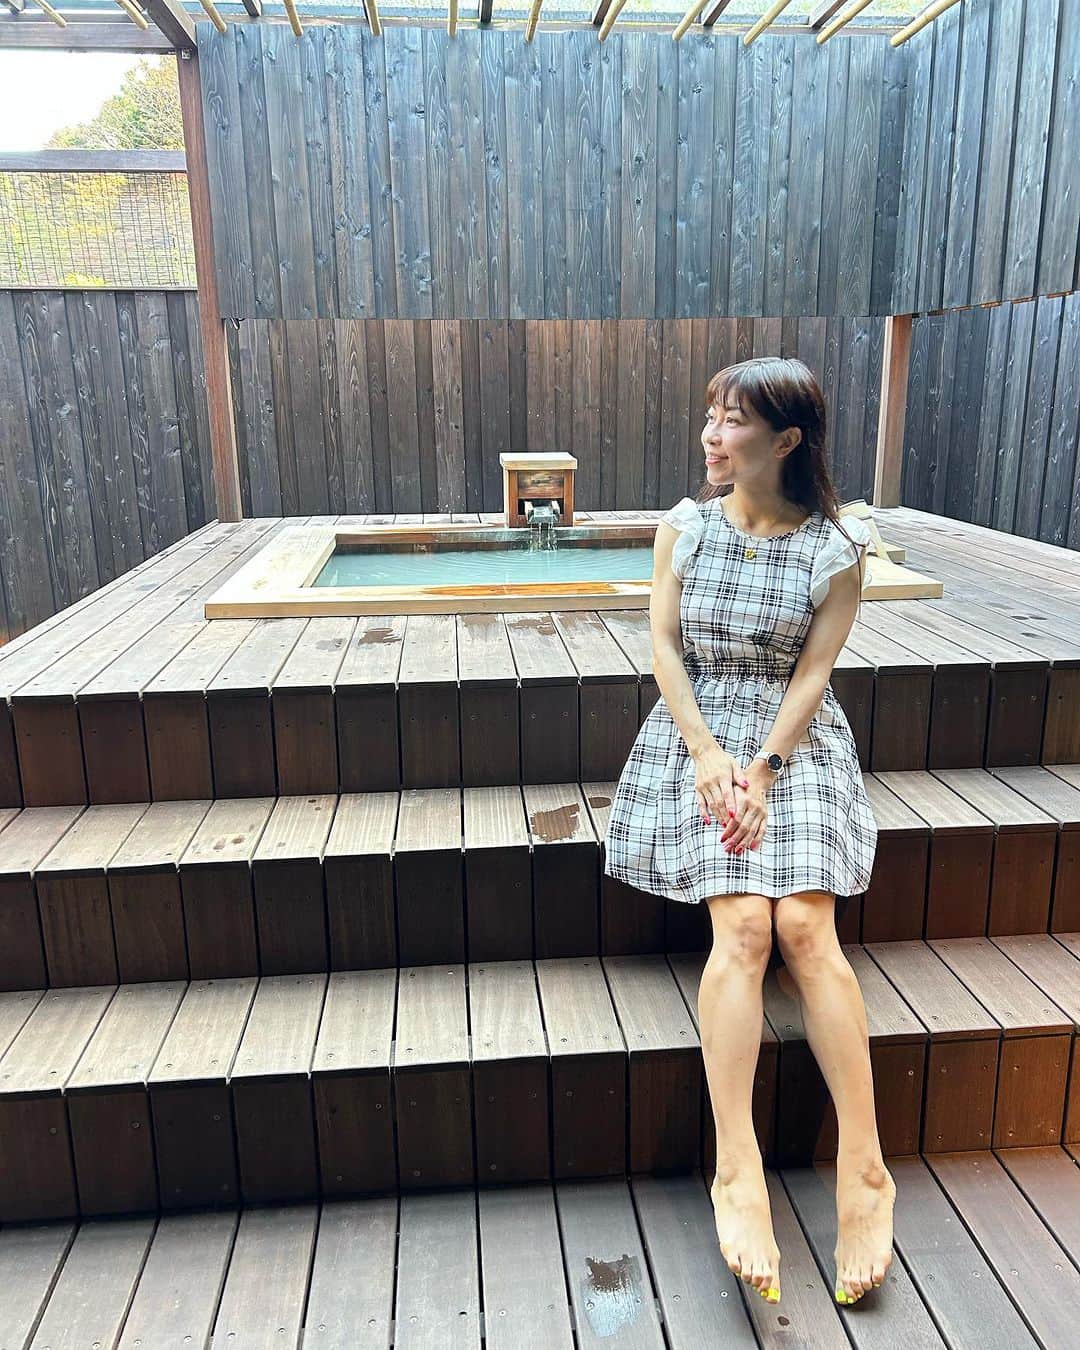 DJ MIYAのインスタグラム：「きゃっほほ♡北海道から東京に帰ってきてまずはあたたか〜いって思った*\(^o^)/*🎀  今月はじめにはこちら♡温泉もほんとうに素晴らしいお宿  かぐや姫 『竹取物語』をコンセプトにした旅館  箱根の高級旅館  『金乃竹 仙石原』様に宿泊させて頂きました❤️  PR @kinnotake.sengokuhara   【お部屋レポート『姫』と露天風呂に内風呂編】  全室ににごり湯♨️露天風呂付き客室があるお宿？ 仙石原といえばにごり湯ですよね♡  2023年4月に誕生した新客室「姫（HIME）」に宿泊させて頂きました💖  総面積131平米（客室90平米+テラス41平米）の広さにも驚きましたが  価格帯にも驚きましたぁぁぁ。 それでも宿泊してみると納得  ここは別世界💕  温泉露天風呂・内風呂付 禁煙のお部屋  外のテラスにある源泉かけ流しの露天風呂も2人占めの世界 静けさと温泉の♨️温かさがほんとうに気持ちよかったです❤️  さらには大きな内風呂も天然温泉です♨️  プライベート感が大事にされているお宿で凄くいい！他のお客様とは一切会わないようになっていて  すごく落ち着いて過ごせますし内装やあらゆるところに遊び心も感じられるすてきなお宿です  こんなに竹が至る所に使用されている空間は初めてで嬉しいです❤️和のおもむきが素晴らしい  タオルアートでお出迎えしてくださって驚きましたぁぁ❤️ハート❤️❤️が大きくて可愛いしすてき♡  感激して眺めちゃいました♡  最高グレードのこちらの客室には源泉掛け流しの露天風呂に温泉内風呂♨️も大きくてそこにあるシャワーブースもかなりの広さ。  他の客室に比べて『姫』のお部屋はワンランク上のサービスとアメニティをご提供♡  とにかく特別感はんぱなかった*\(^o^)/*  さらにパウダールームの所は床暖房もきいていて気持ちよかったです。  ◉源泉: 天然温泉：自家源泉 金色(こんじき)の湯  金乃竹 温泉♨️  ◉泉質: アルカリ性単純温泉  ◉総部屋数:9室  Web: https://kinnotake-tonosawa.com  https://www.ikyu.com/00001758/?ppc=2&rc=1  Access:  神奈川県足柄下郡箱根町仙石原817-342  #箱根 #箱根旅行  #金乃竹 #金乃竹仙石原  #箱根温泉 #箱根湯本 #ikyu_travel  #hakonetravel #箱根旅館 #露天風呂 #高級旅館 #箱根金乃竹 #全室露天風呂付き客室 #客室露天風呂 #箱根女子旅 #タビジョ #トラベラー #旅好き女子 #温泉旅館 #源泉かけ流し #東京カレンダー #トリップアドバイザー #神奈川観光スポット #温泉大好き #仙石原 #ラグジュアリーホテル #ホテルステイ #ホテル宿泊 #高級ホテル  #マイトリップMIYA」